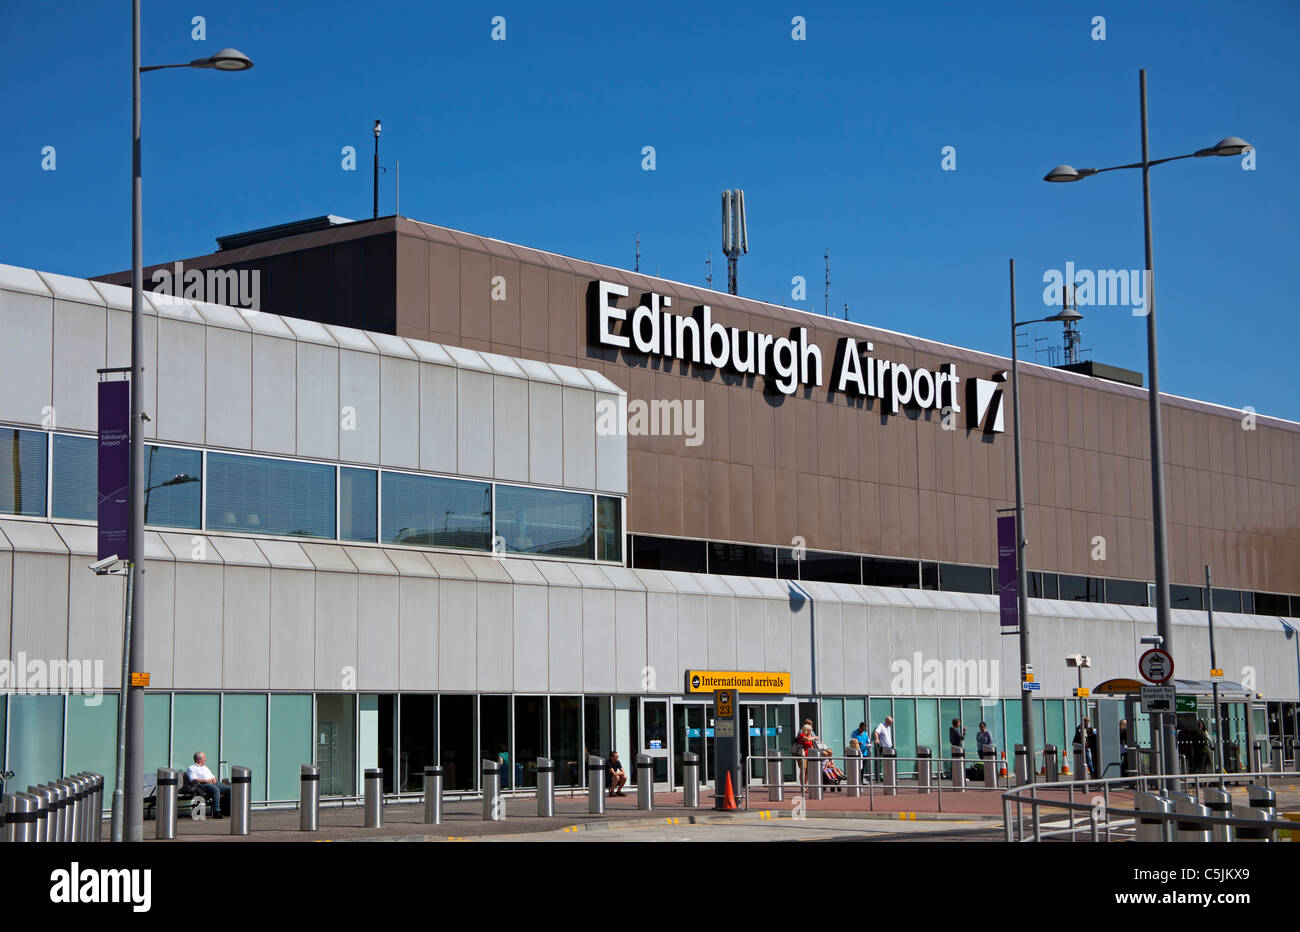 L'aéroport d'Édimbourg en Écosse Angleterre Europe Banque D'Images